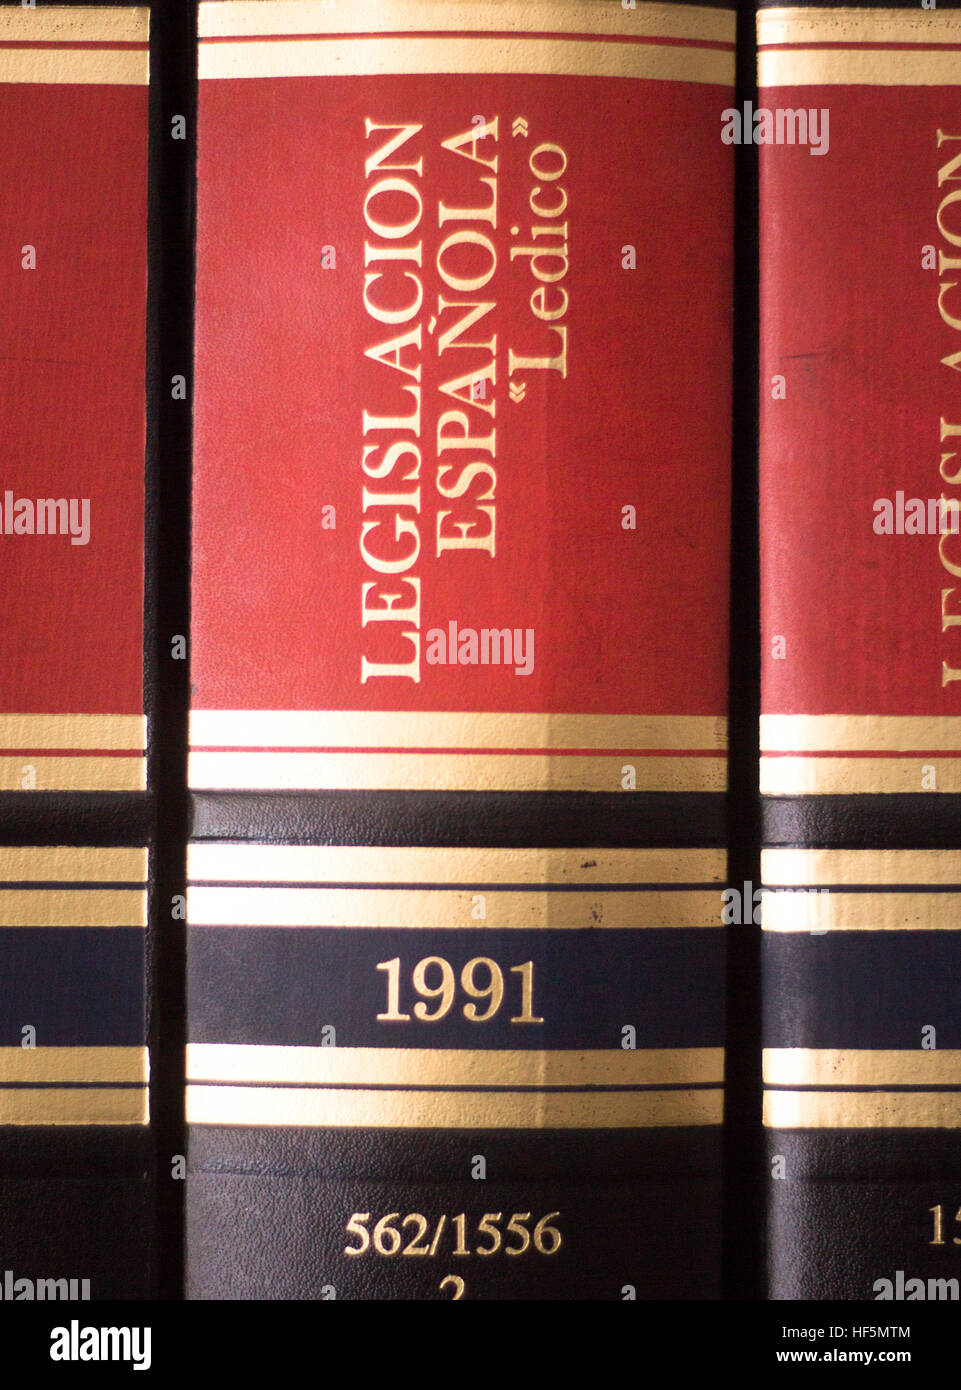 Viejos libros jurídicos Law Reports en estantes de bufetes de abogados y abogados en procesos judiciales biblioteca de referencia. Foto de stock